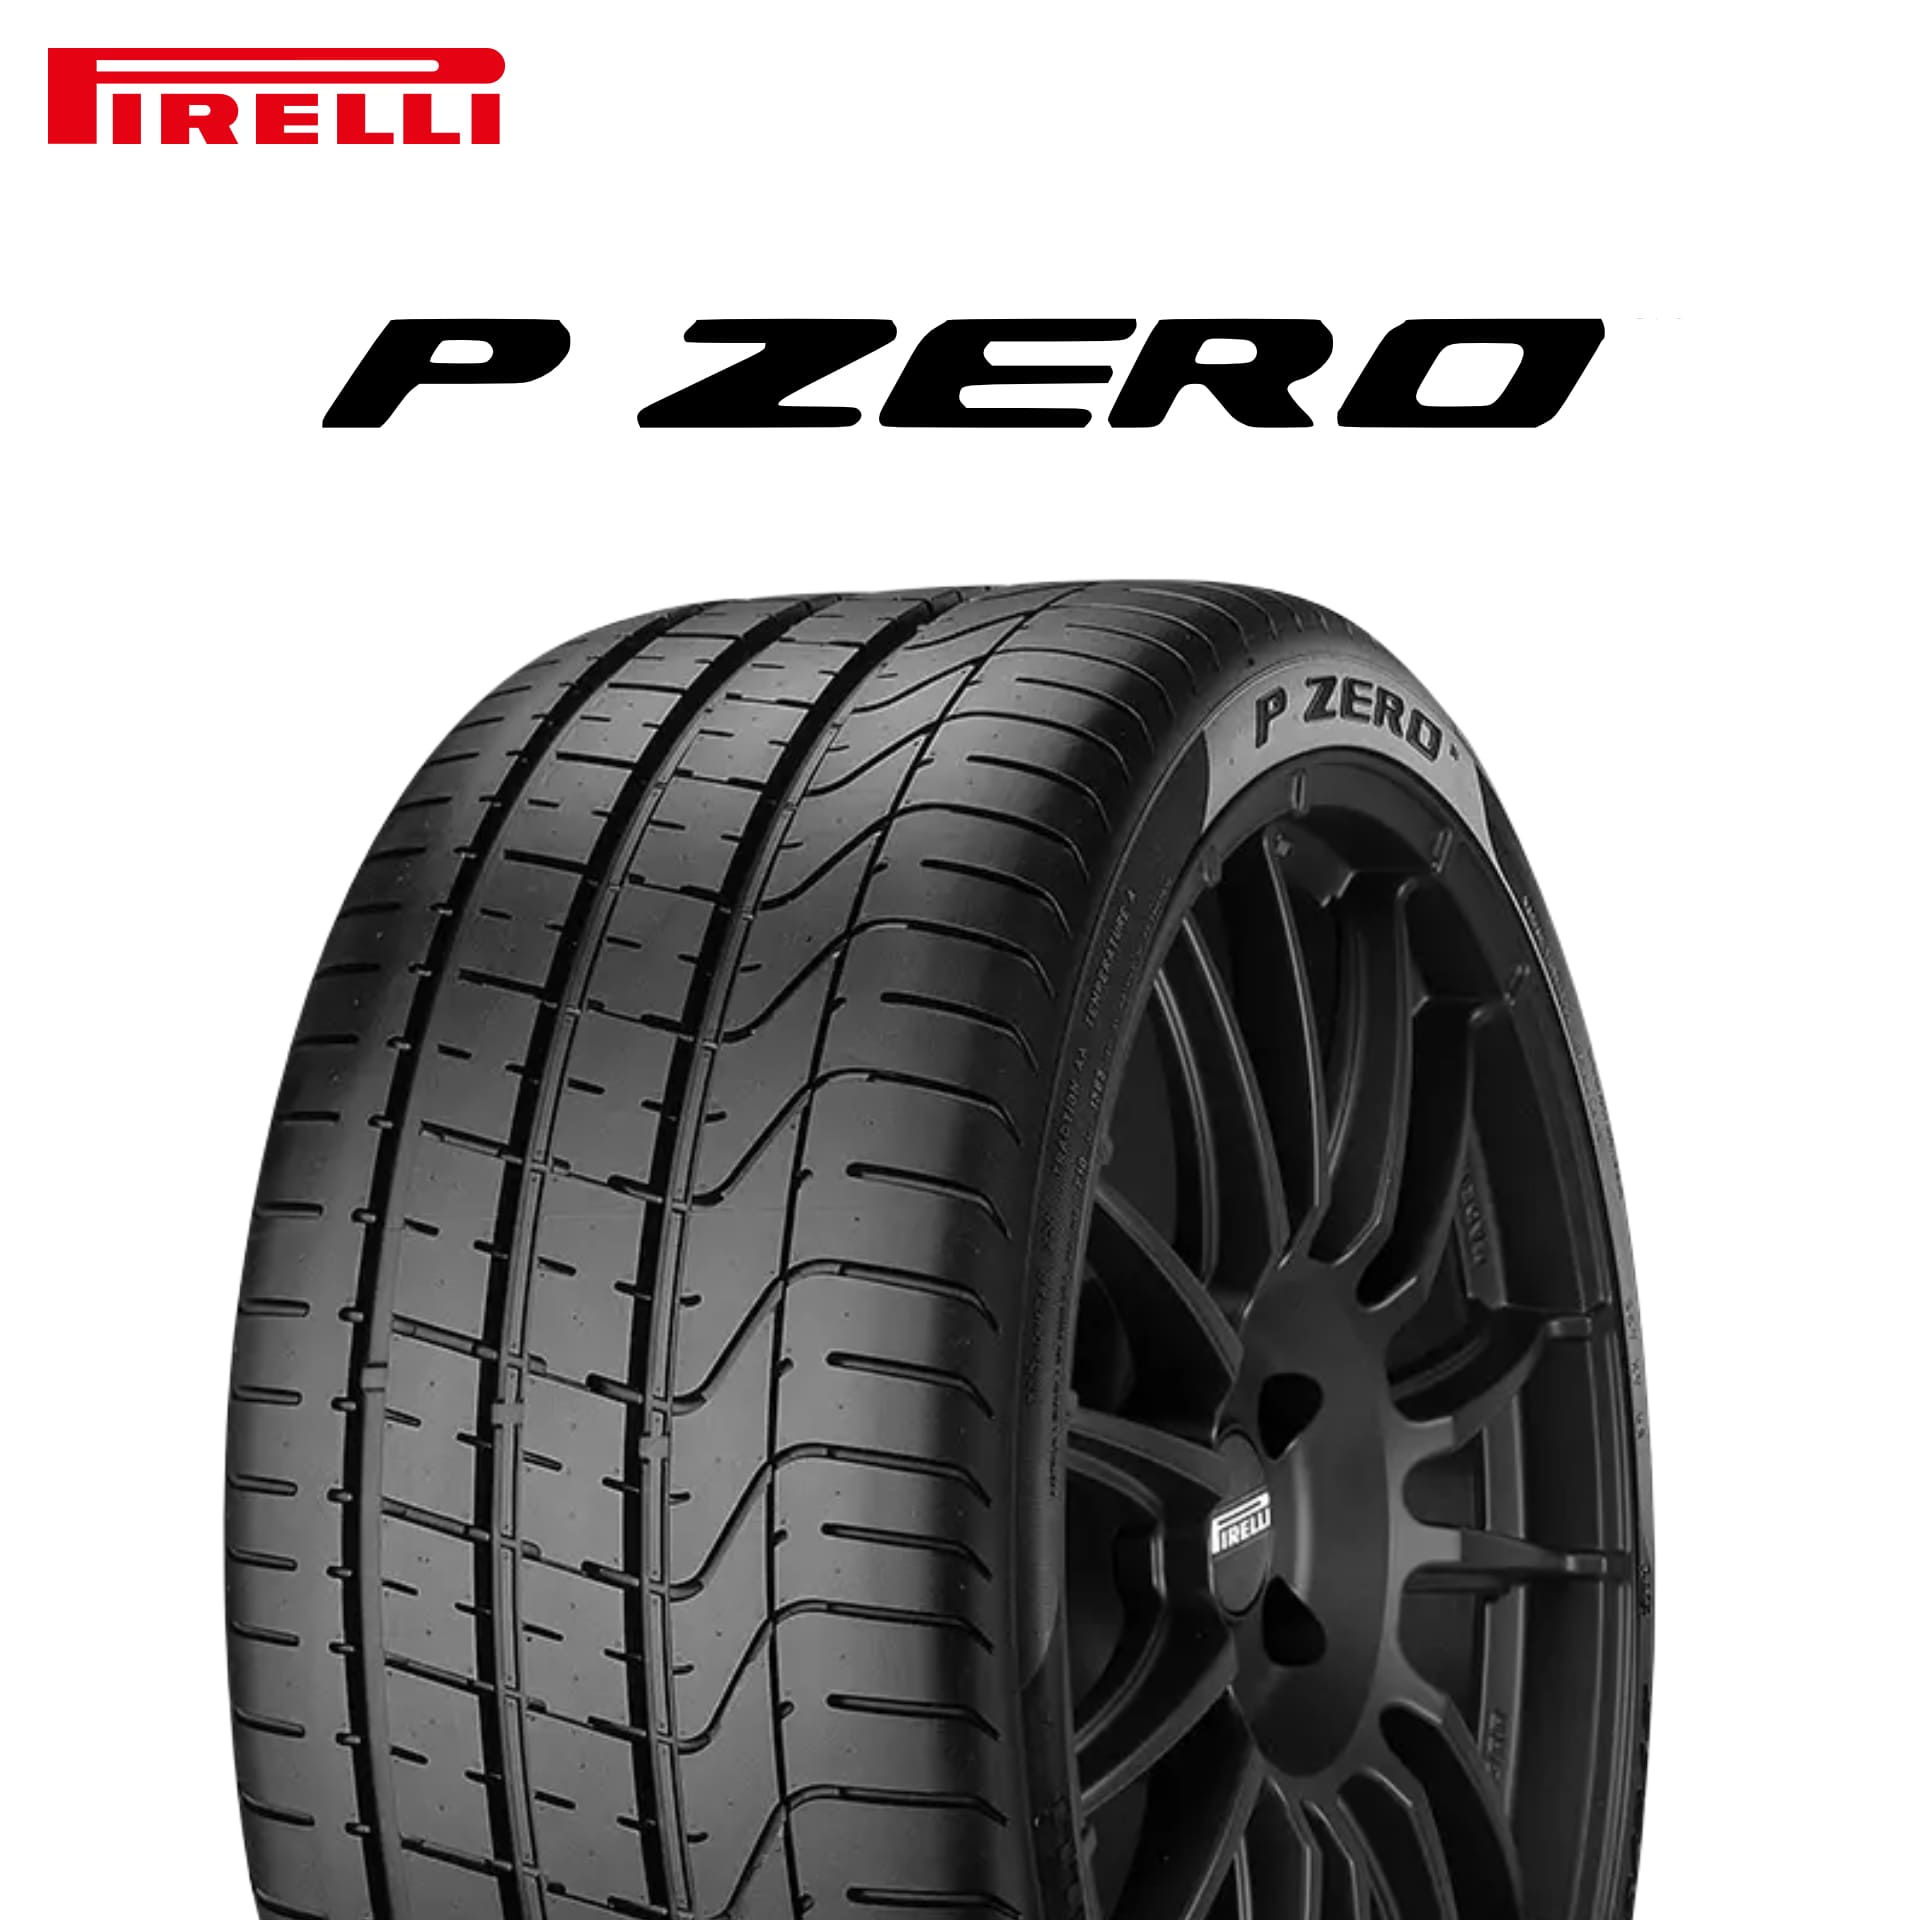 22年製 285/35R18 97Y MO ピレリ P ZERO (ピーゼロ) メルセデスベンツ承認タイヤ 18インチ 新品